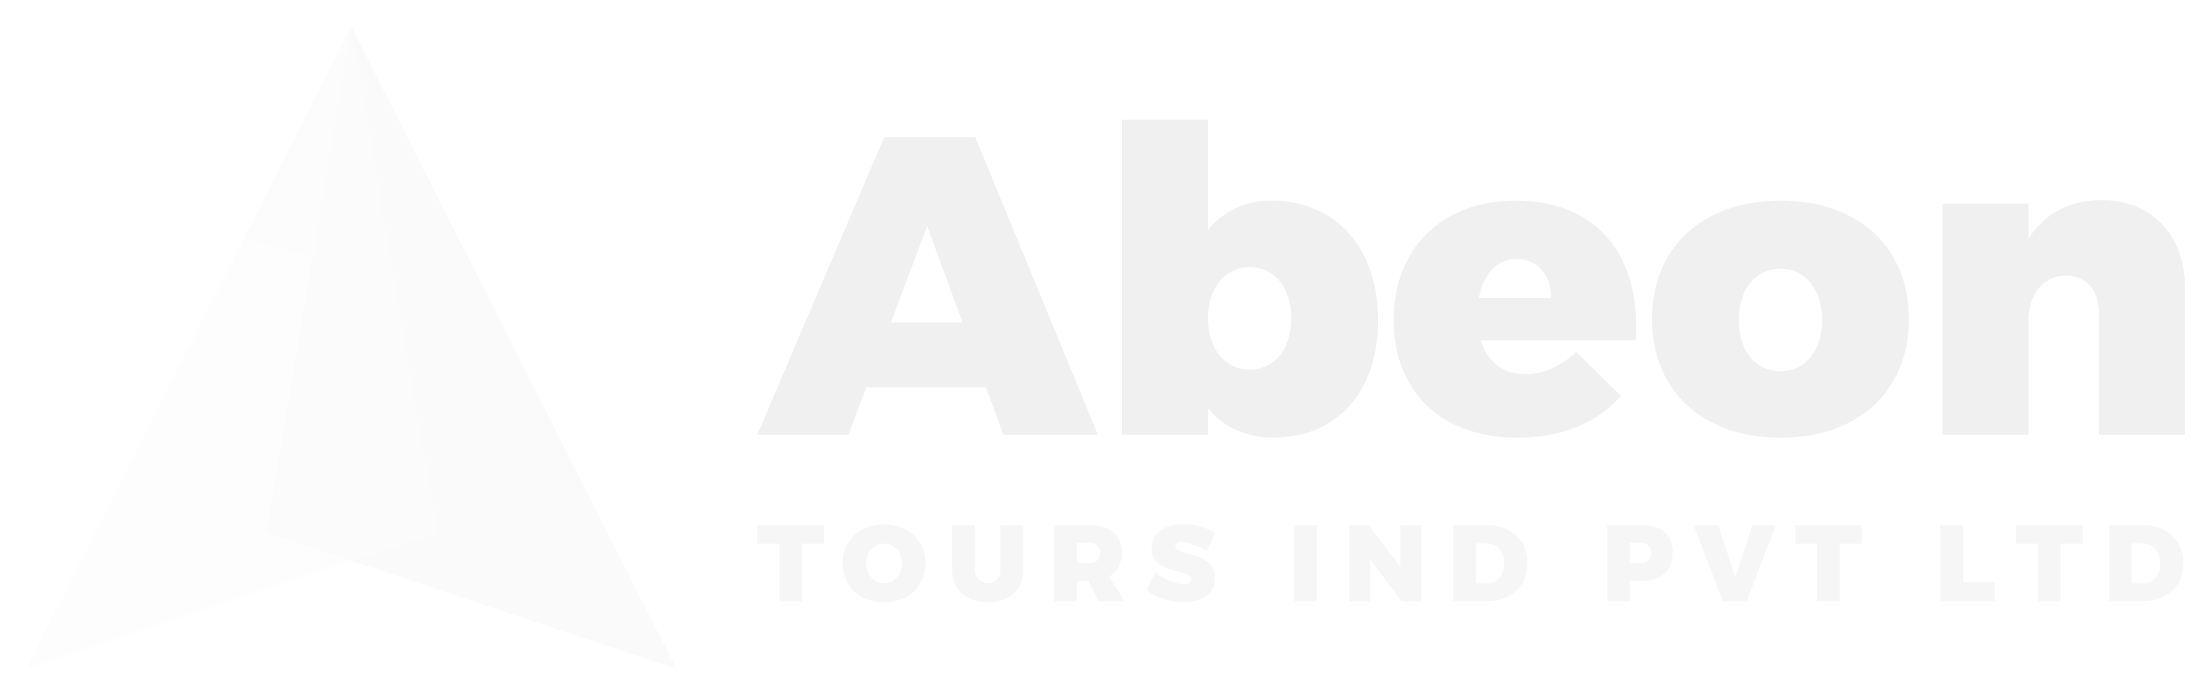 Abeon Tours